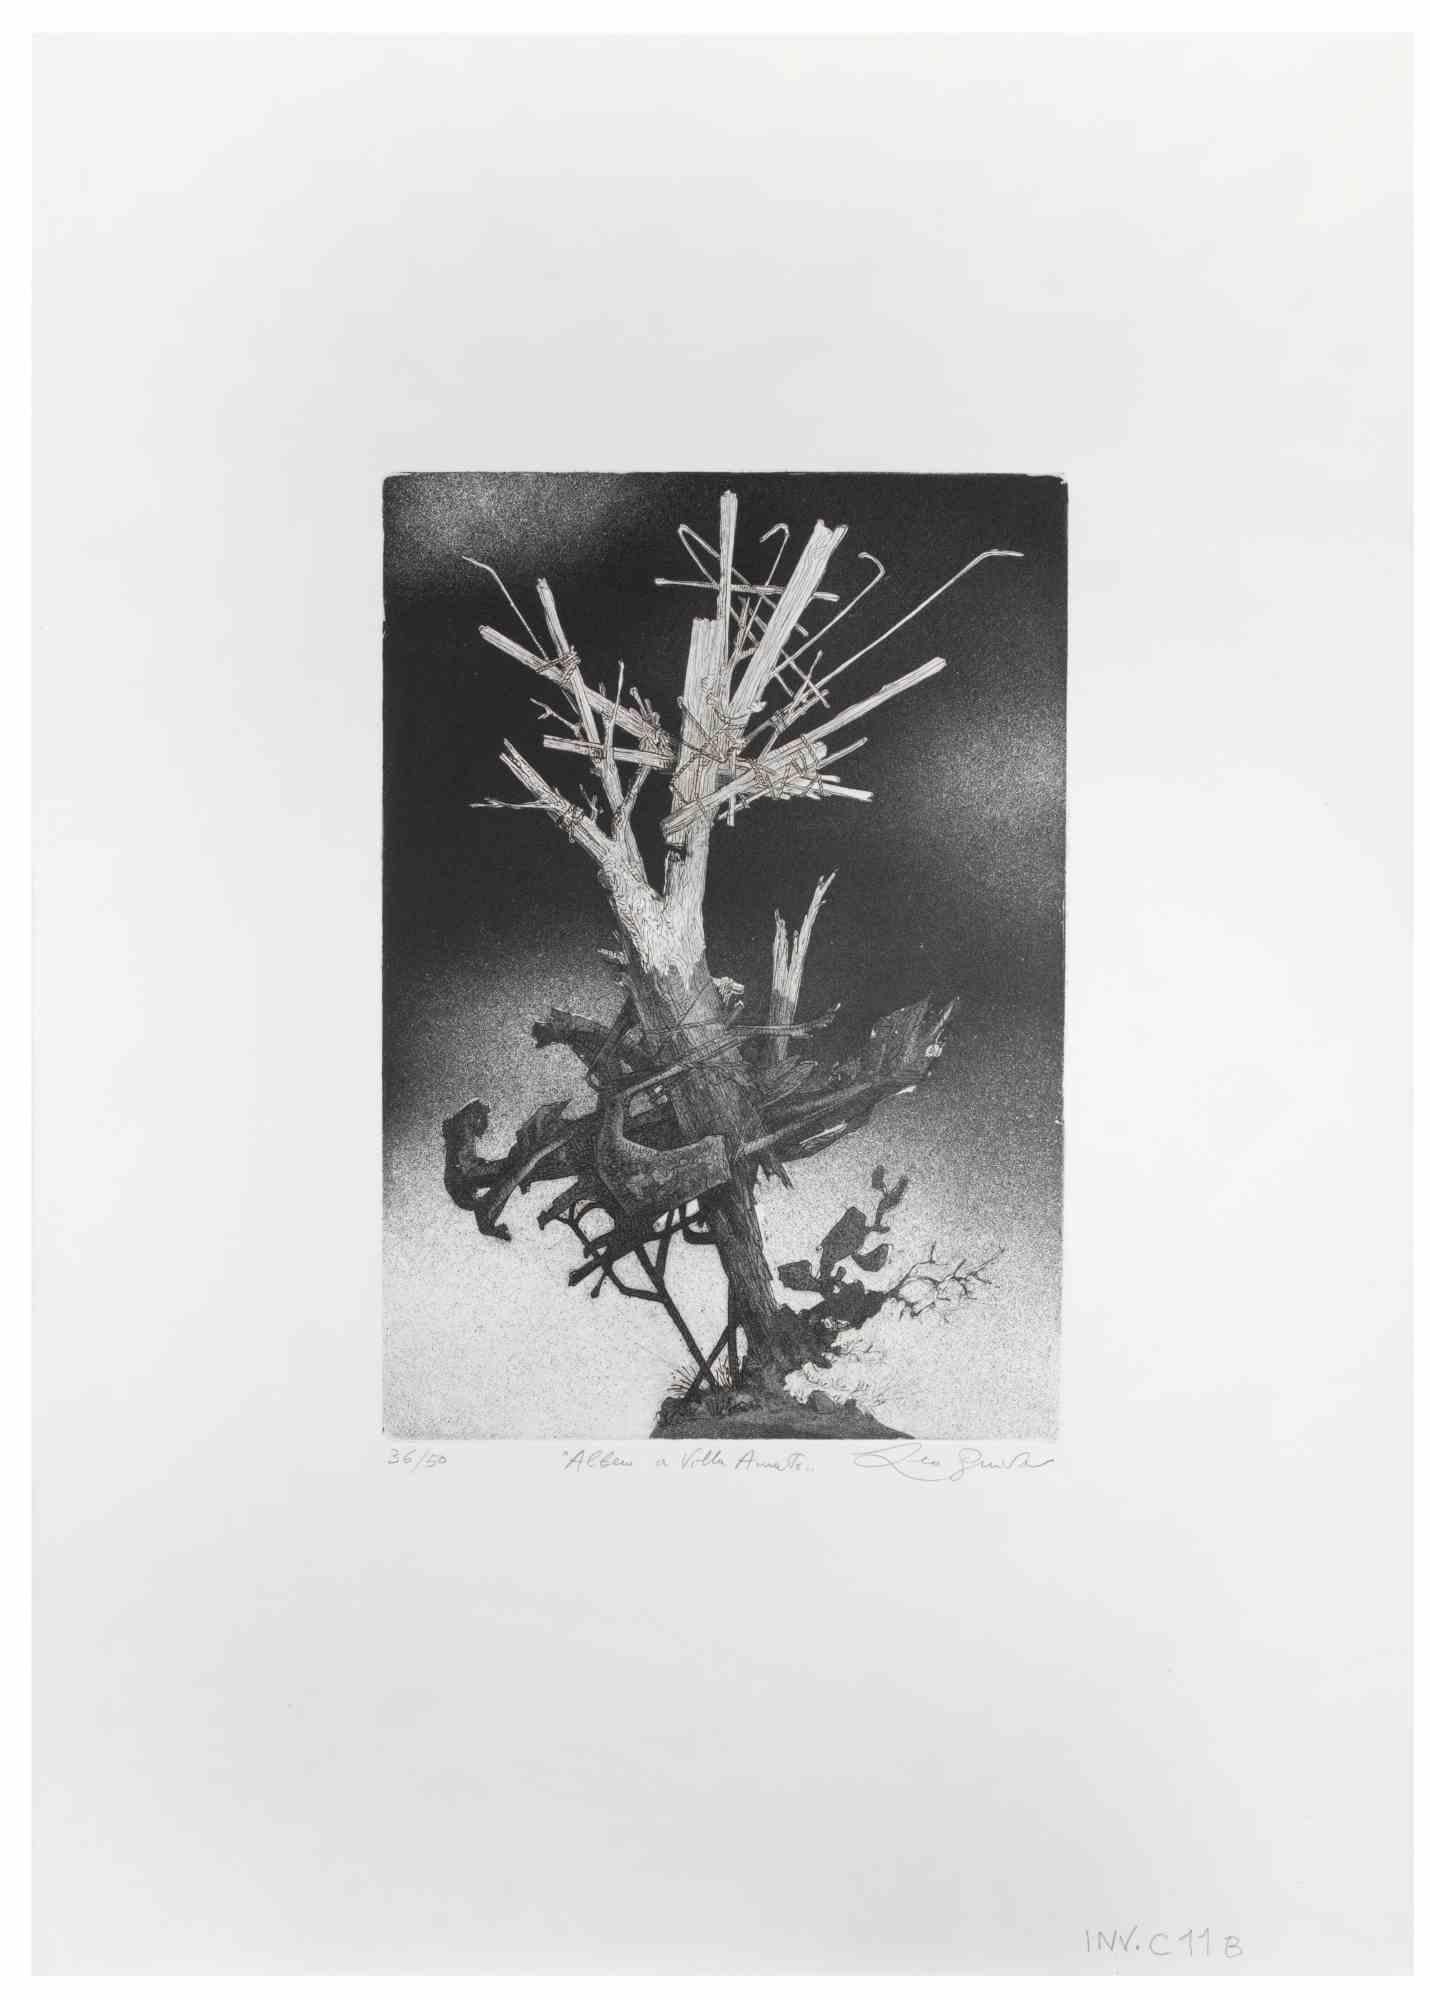 Der Baum in der Villa ist ein Kunstwerk des zeitgenössischen italienischen Künstlers  Leo Guida (1992 - 2017) in den 1970er Jahren.

Schwarz-Weiß-Radierung auf Papier.

Handsigniert am unteren rechten Rand, nummerierte Auflage von 50 Exemplaren am